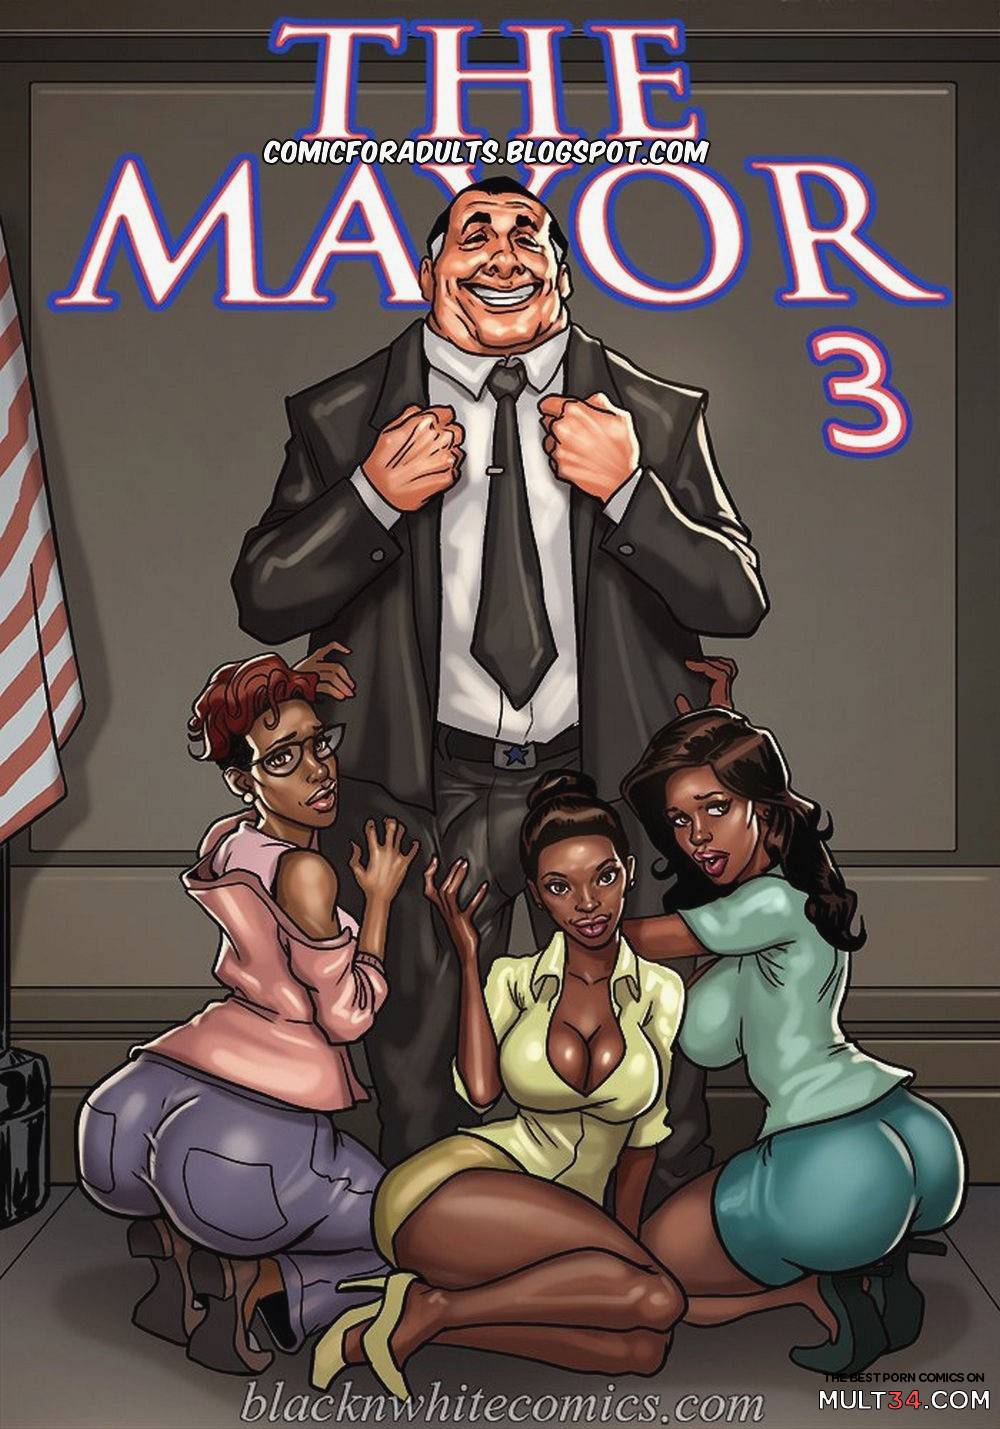 3 3 - The Mayor 3 porn comic - the best cartoon porn comics, Rule 34 | MULT34